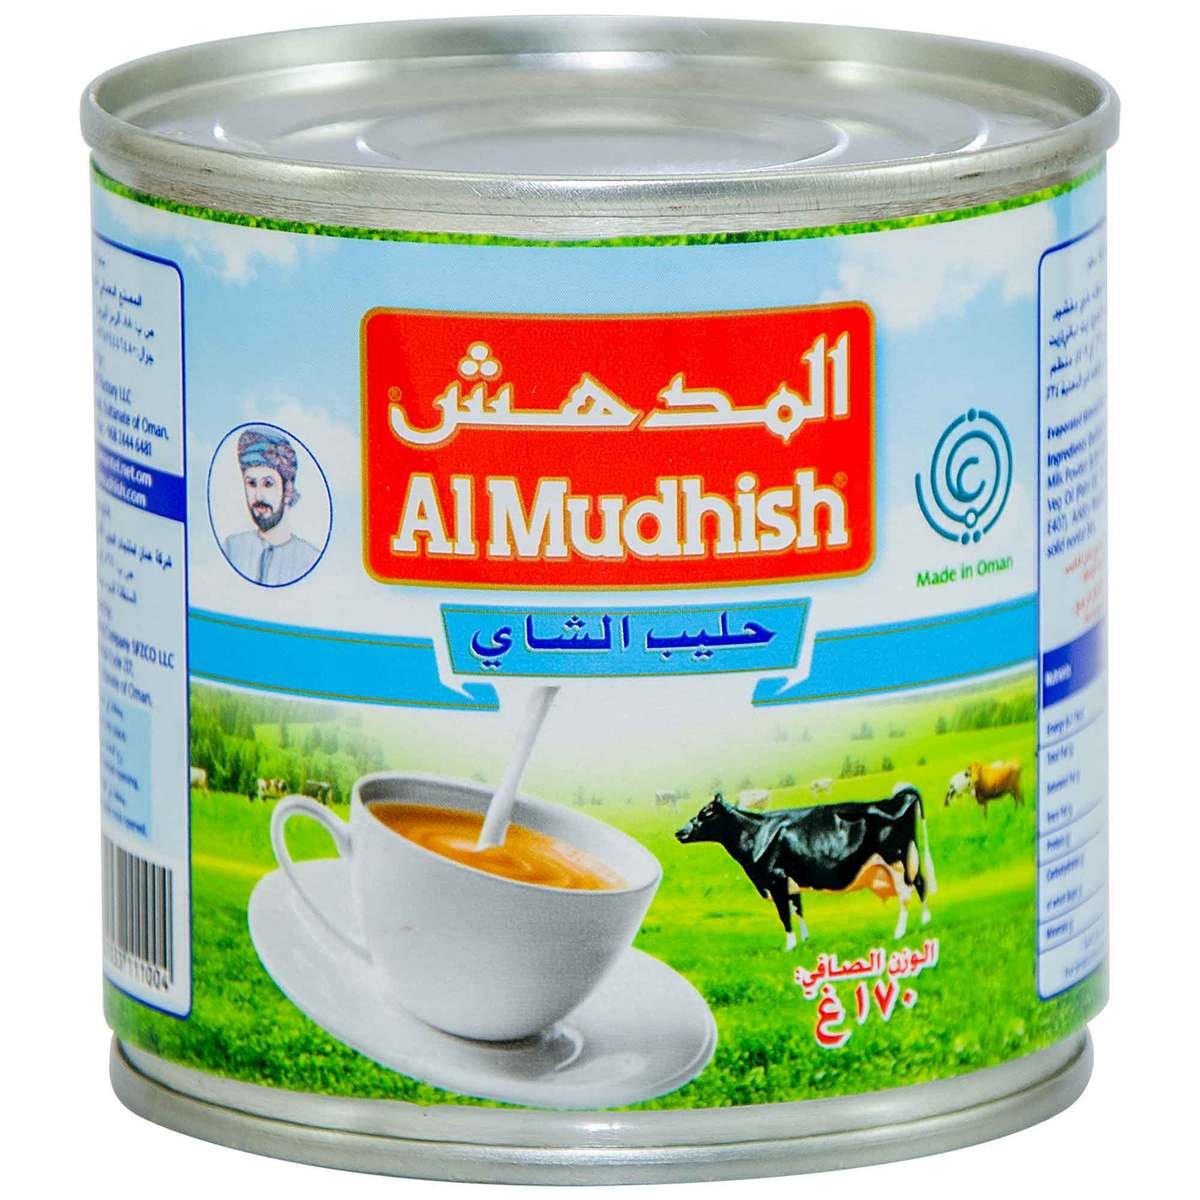 Al Mudhish Tea Milk 170g